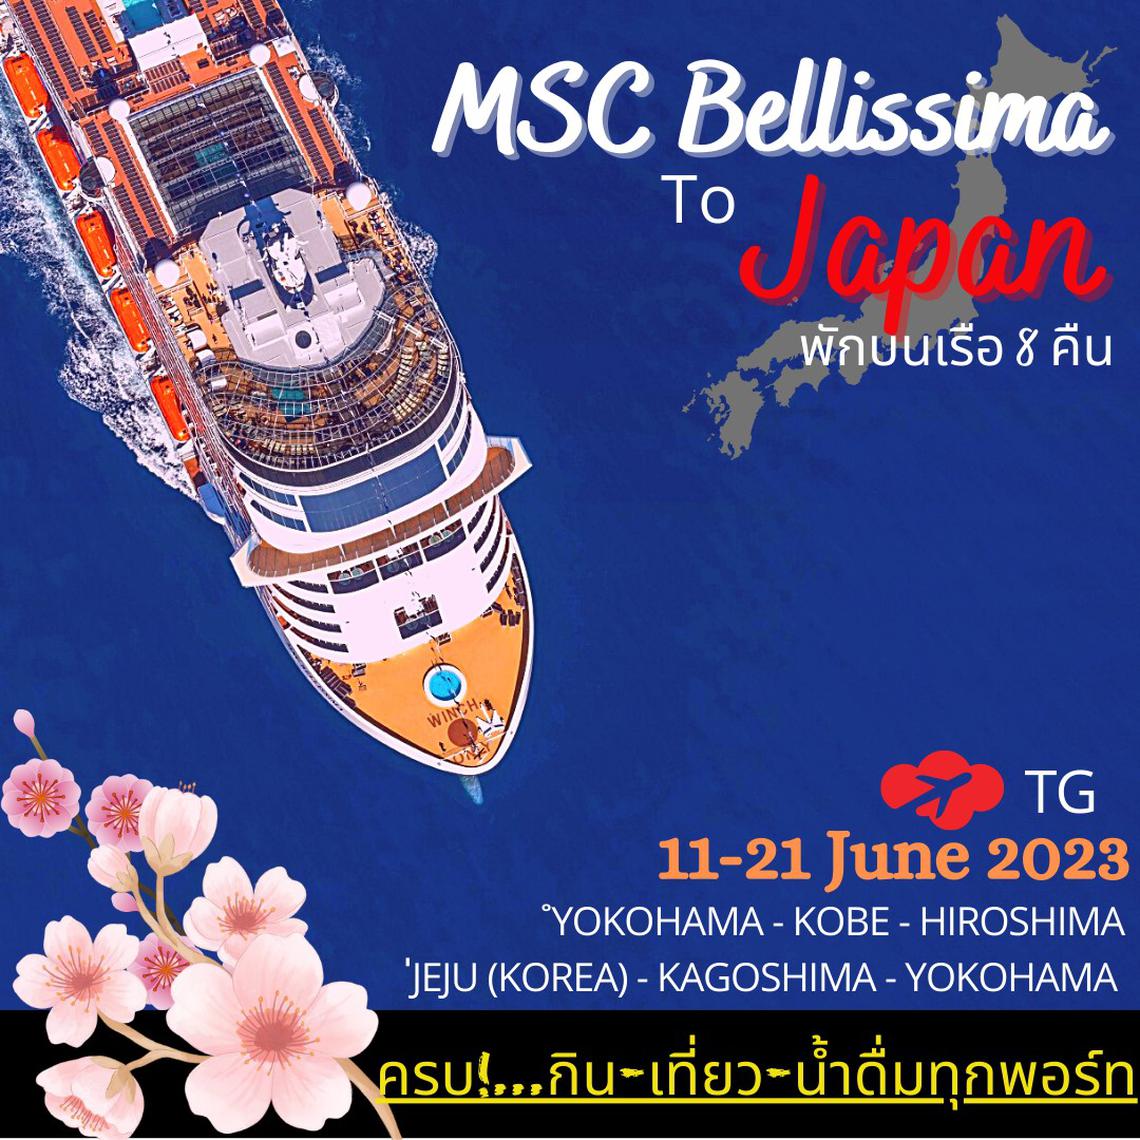 เที่ยวญี่ปุ่นสไตล์ใหม่กับ เรือสำราญ MSC Bellissima 